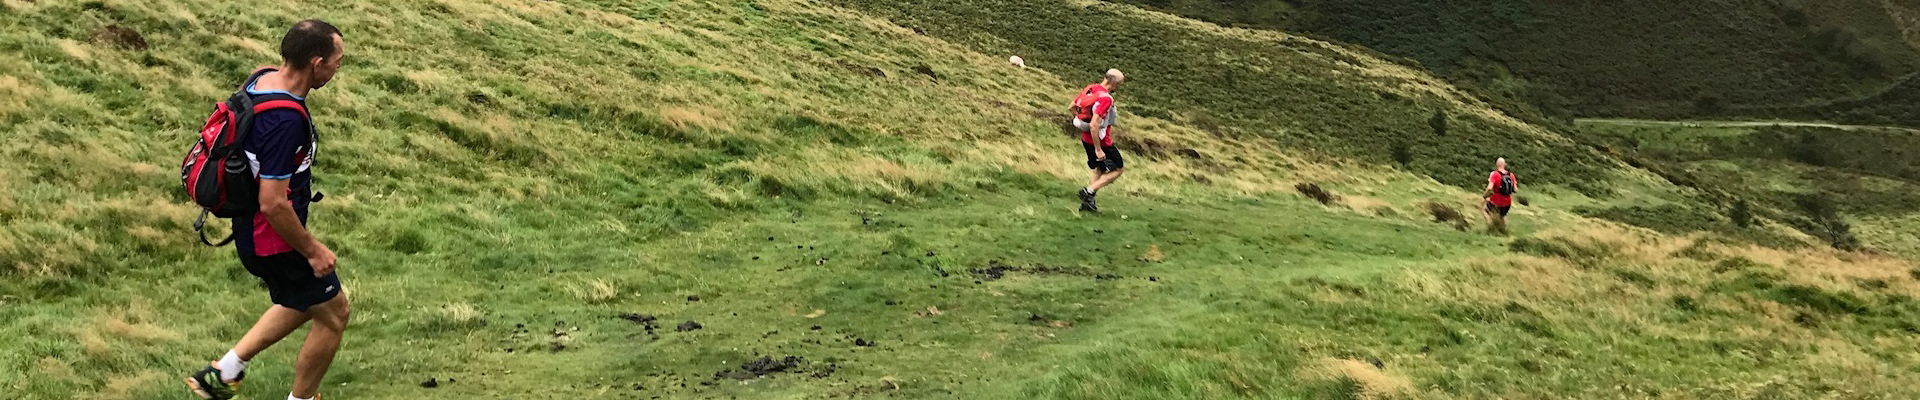 Stowe Trail Run #2 2018